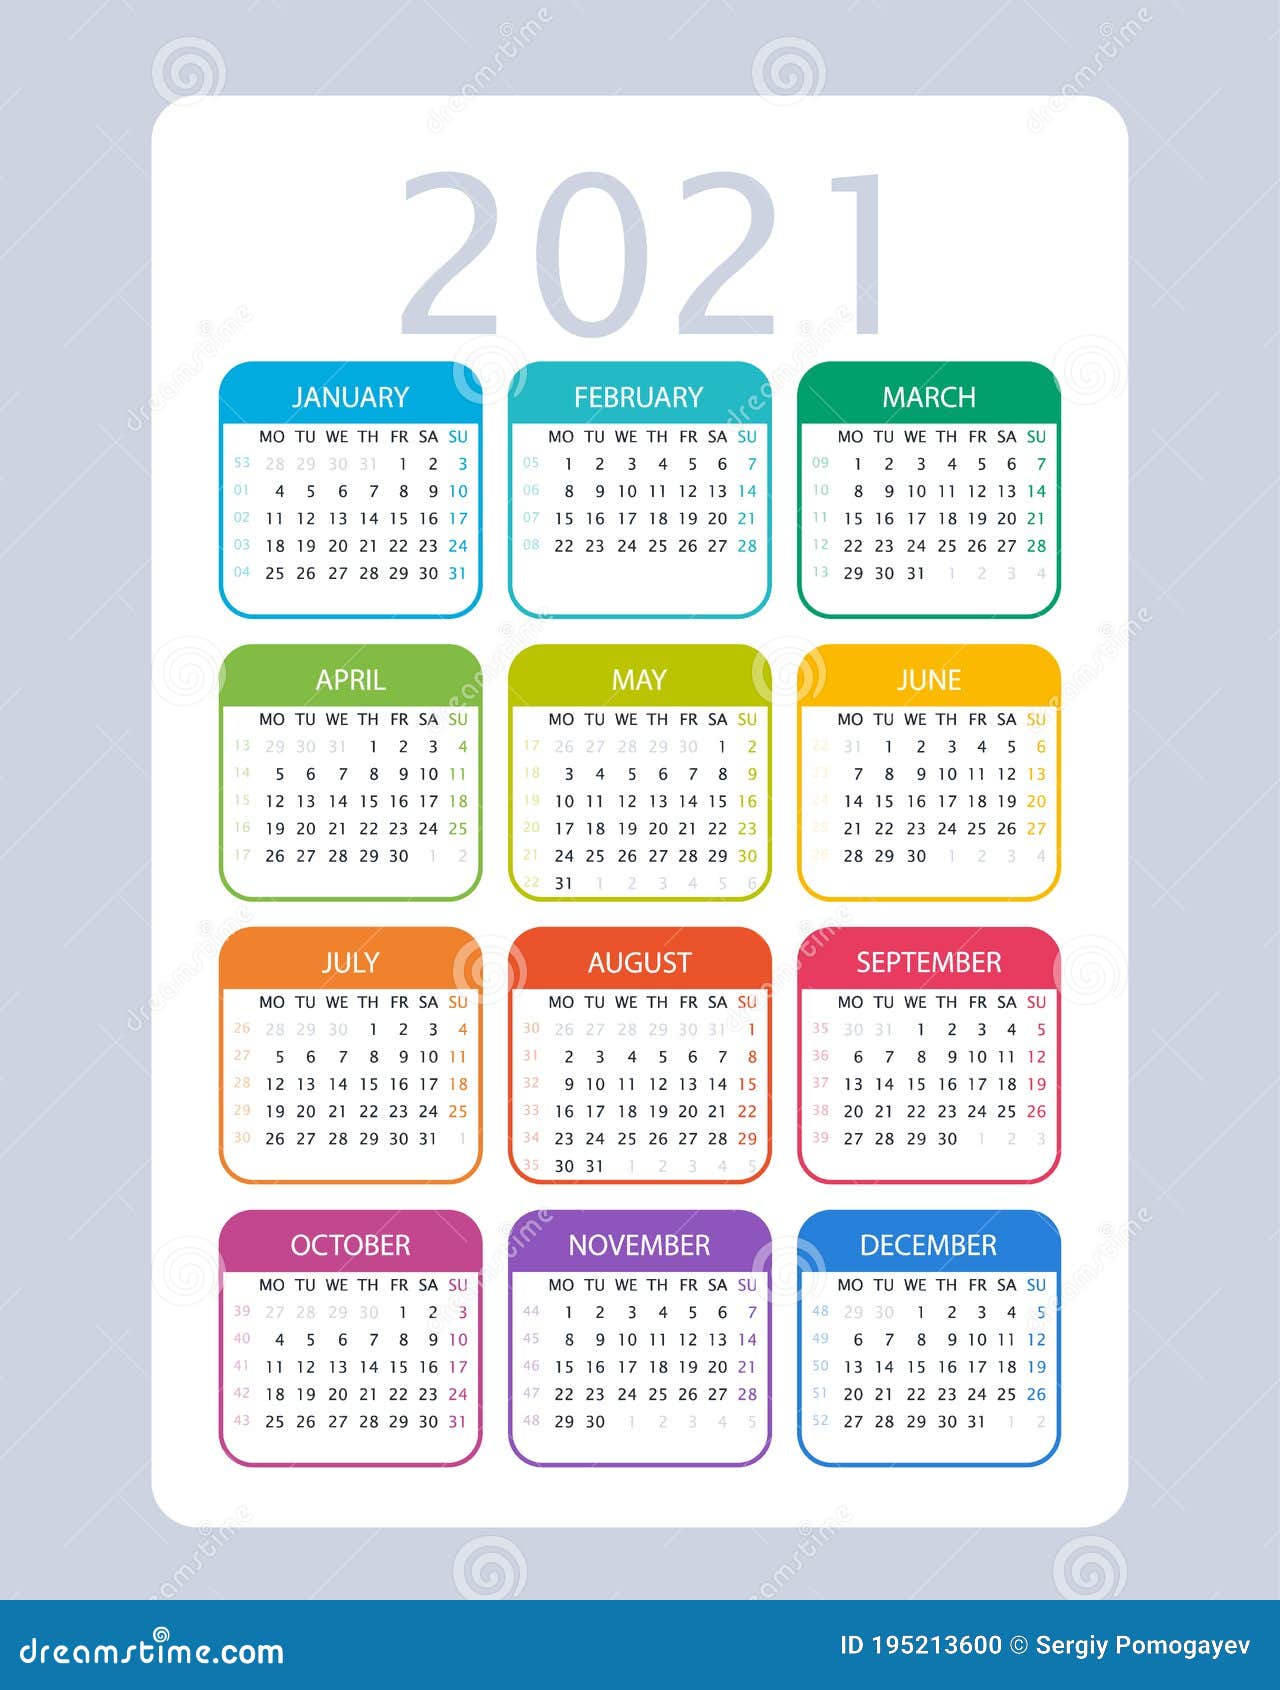 11 неделя 2021. Календарь 2021 на английском. Номера недель 2021. Календарь с номерами недель. Английский календарь 2021 года.